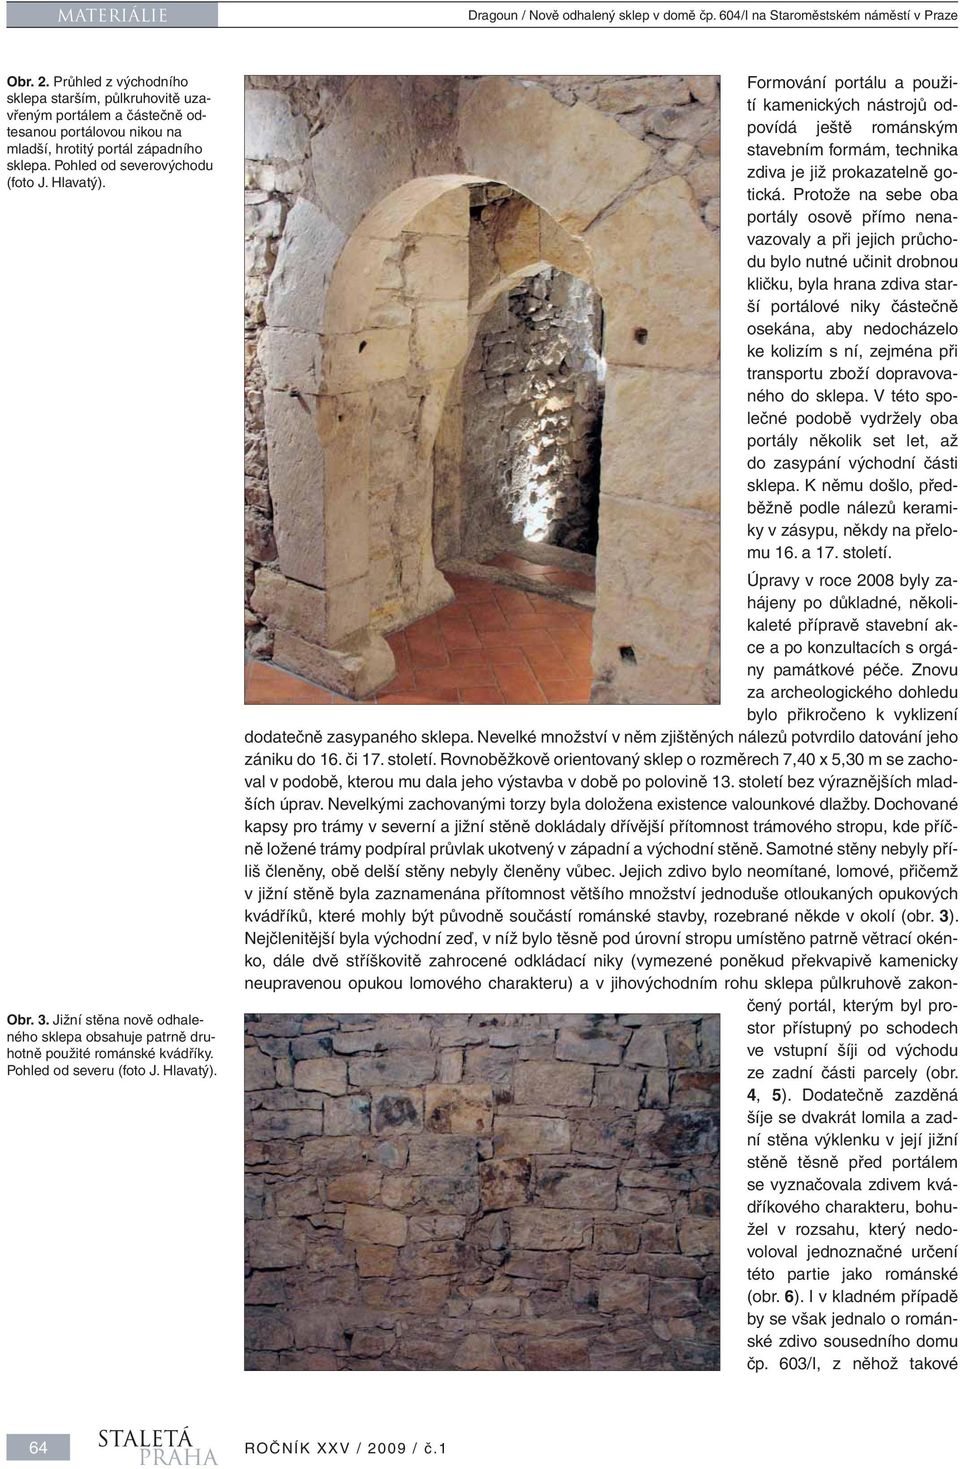 Jižní stěna nově odhaleného sklepa obsahuje patrně druhotně použité románské kvádříky.